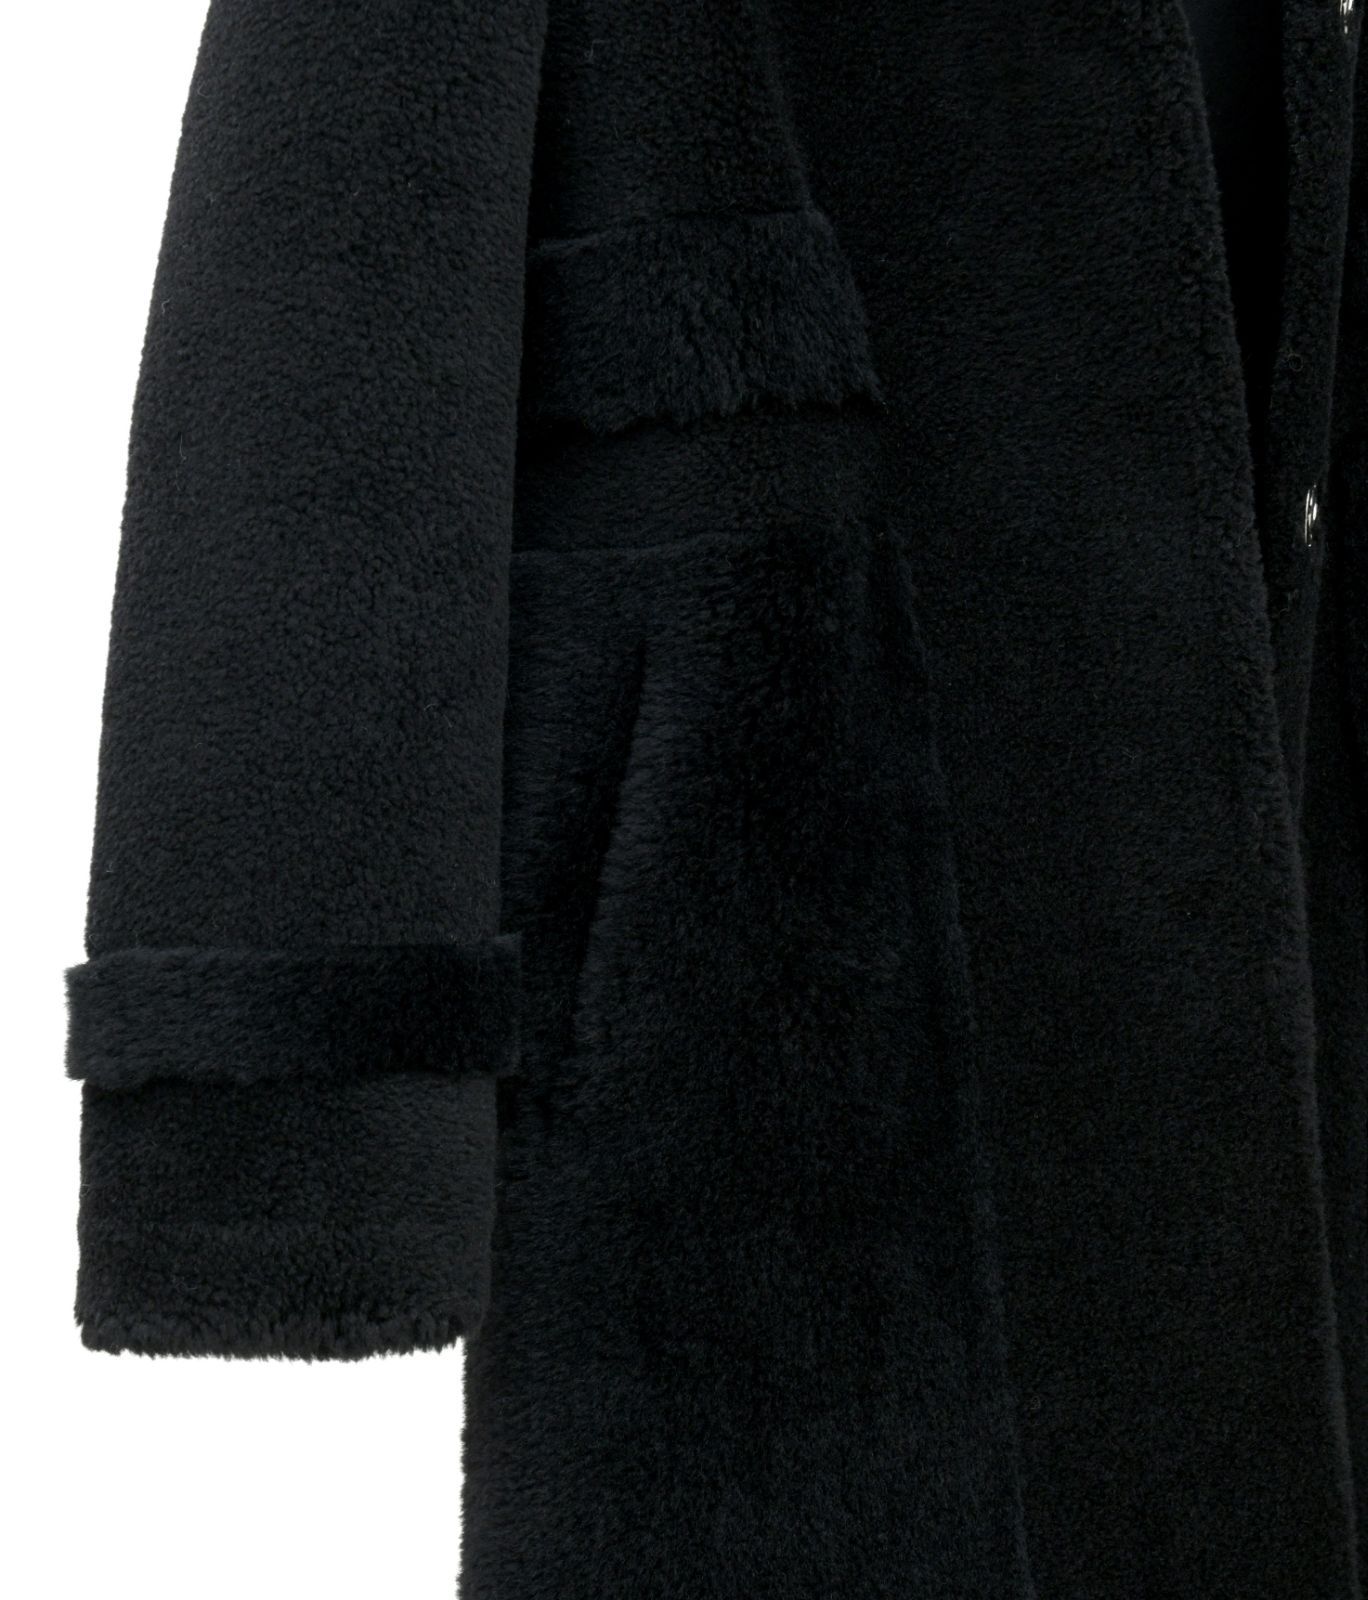 新品限定★帽子付★最高級★フォックスファー襟付き羊毛ロングコート 黒毛皮、ファー両サイドにポケット付